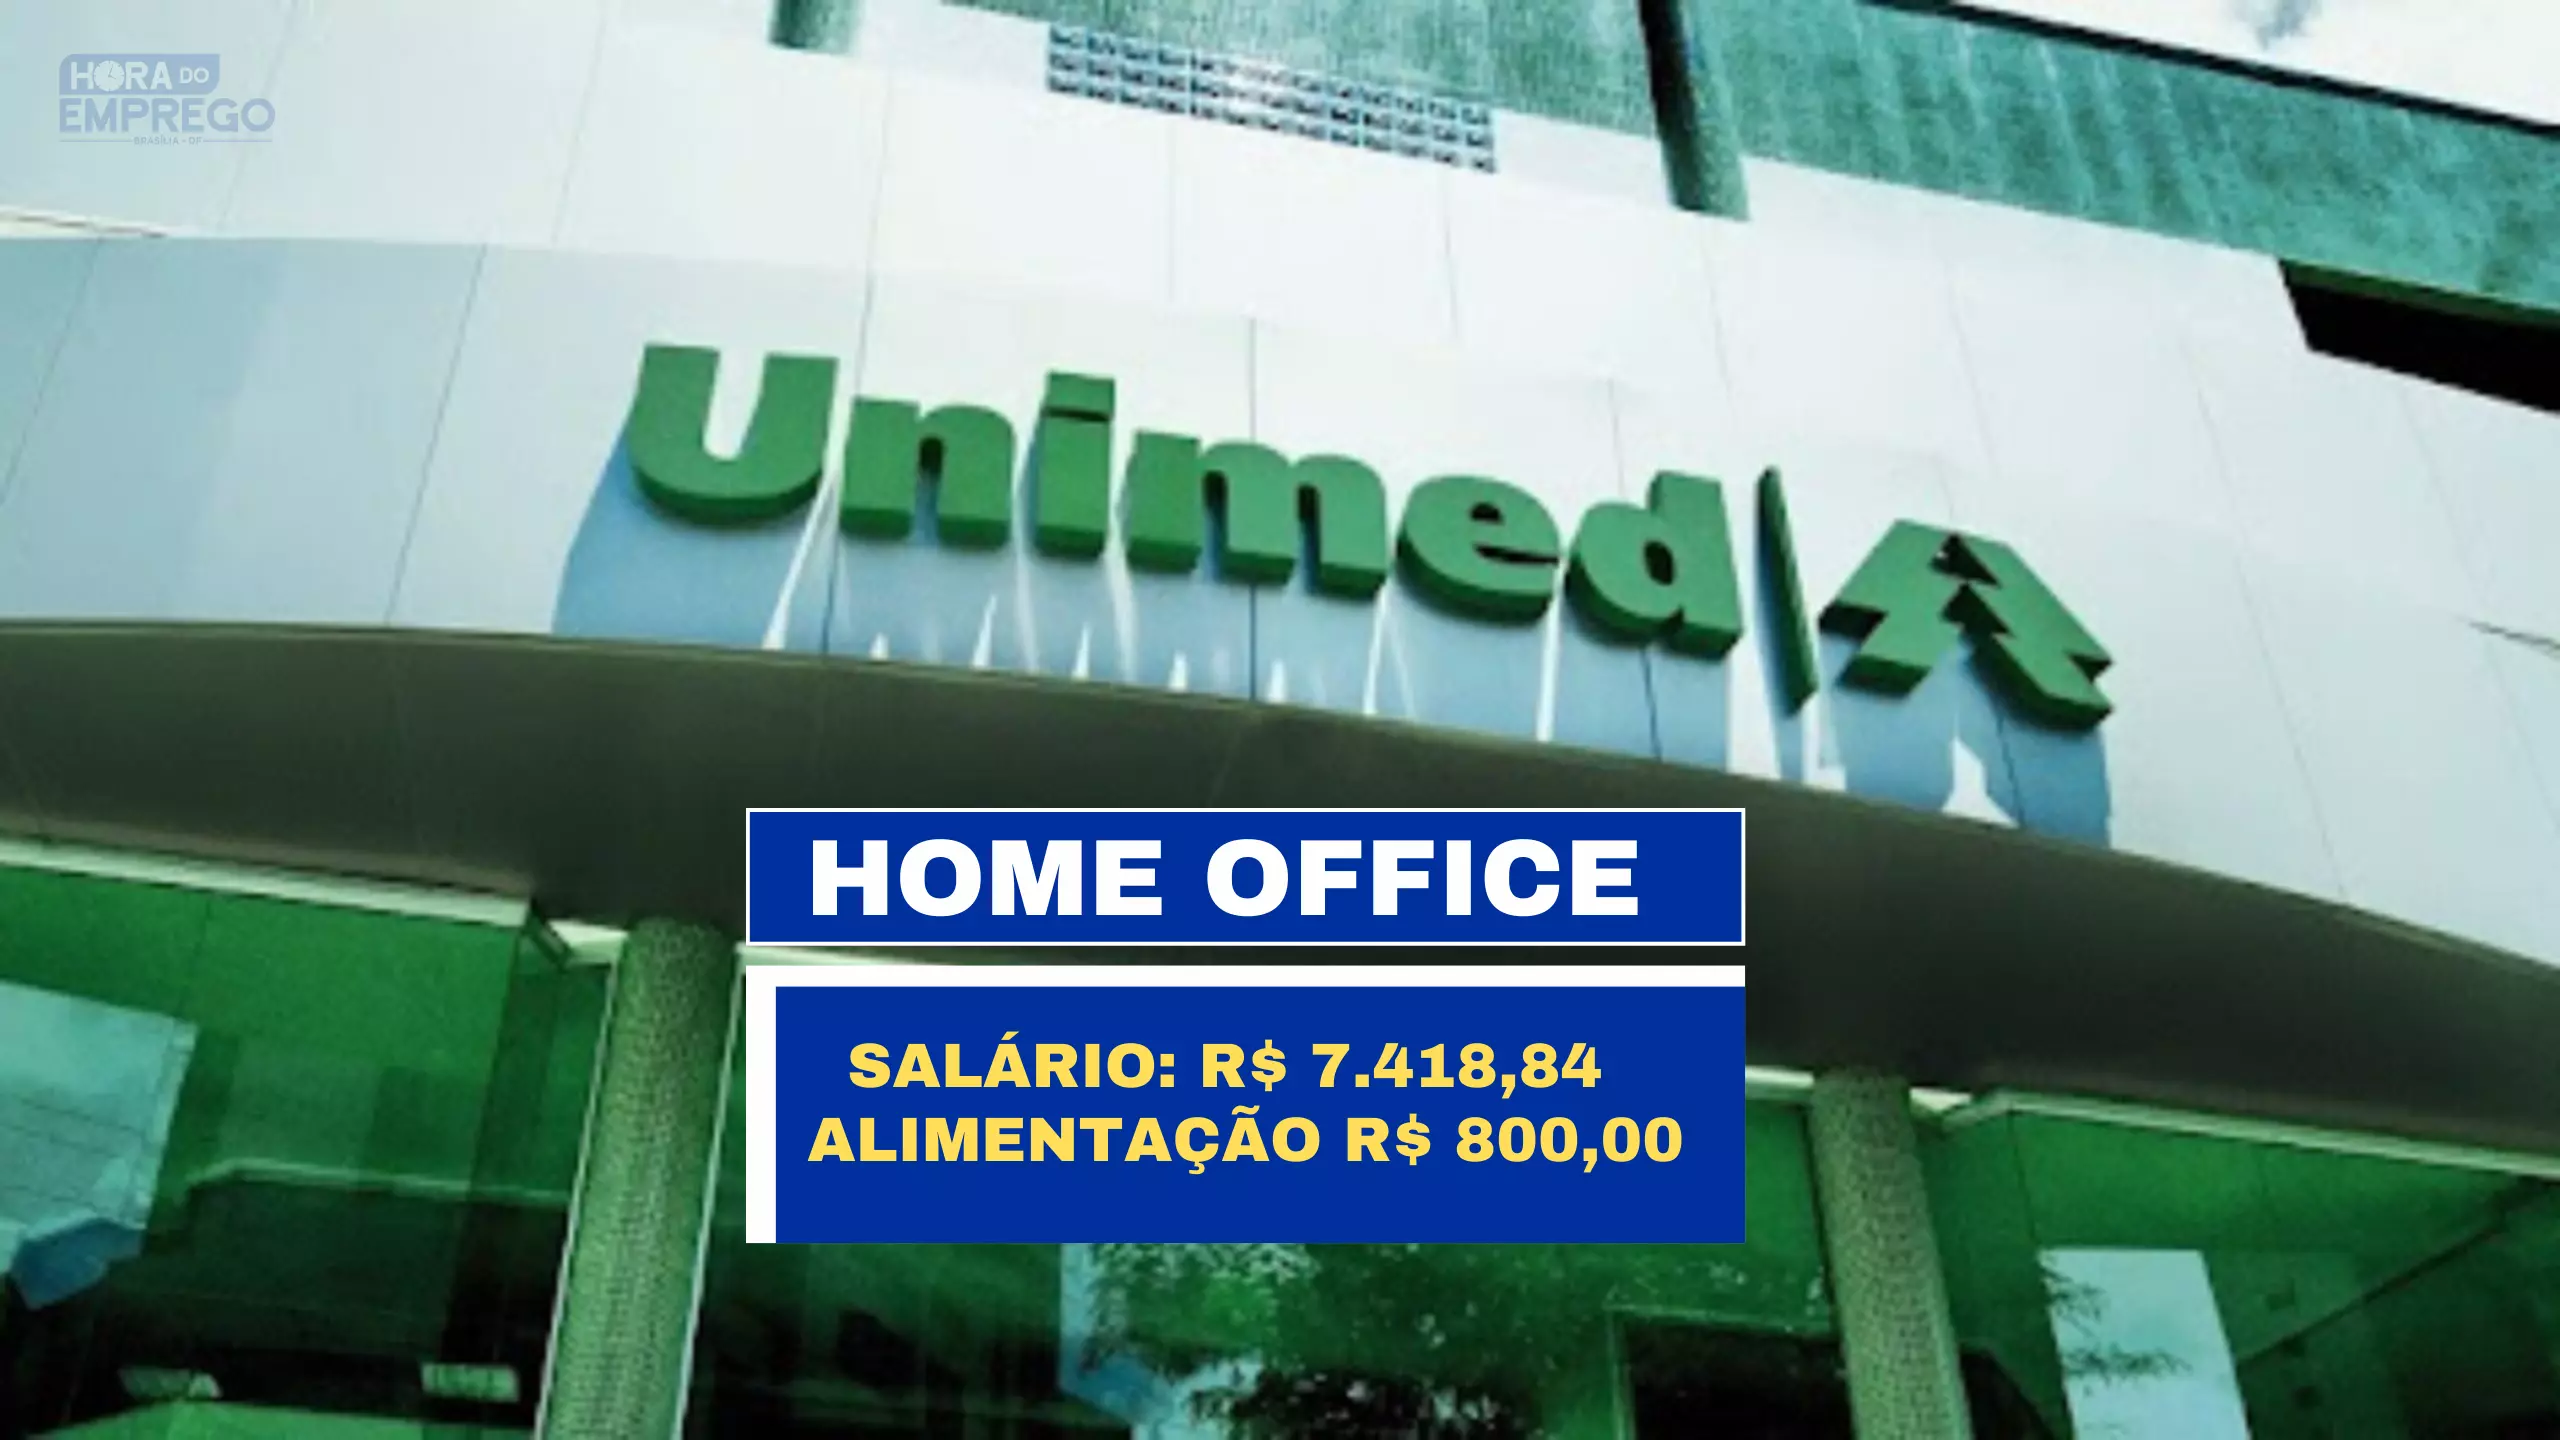 Unimed Nacional anuncia vaga 100% HOME OFFICE para DIGITADOR com salário de  R$ 1.800,00 e Alimentação R$ 800,00